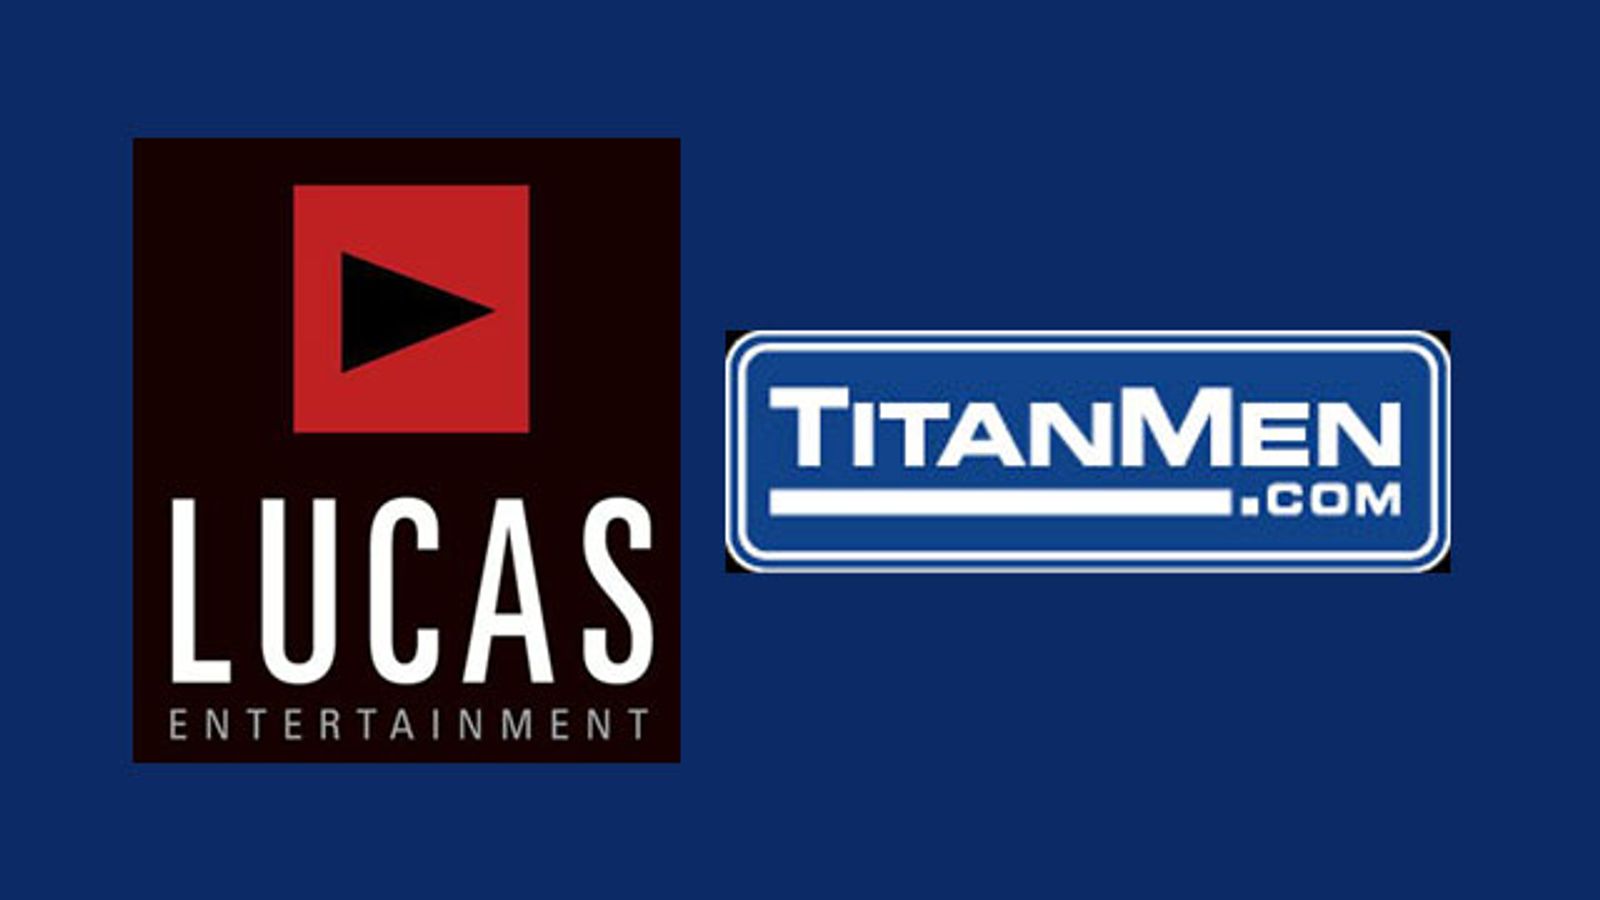 Lucas Entertainment, TitanMen Partner for On-Demand